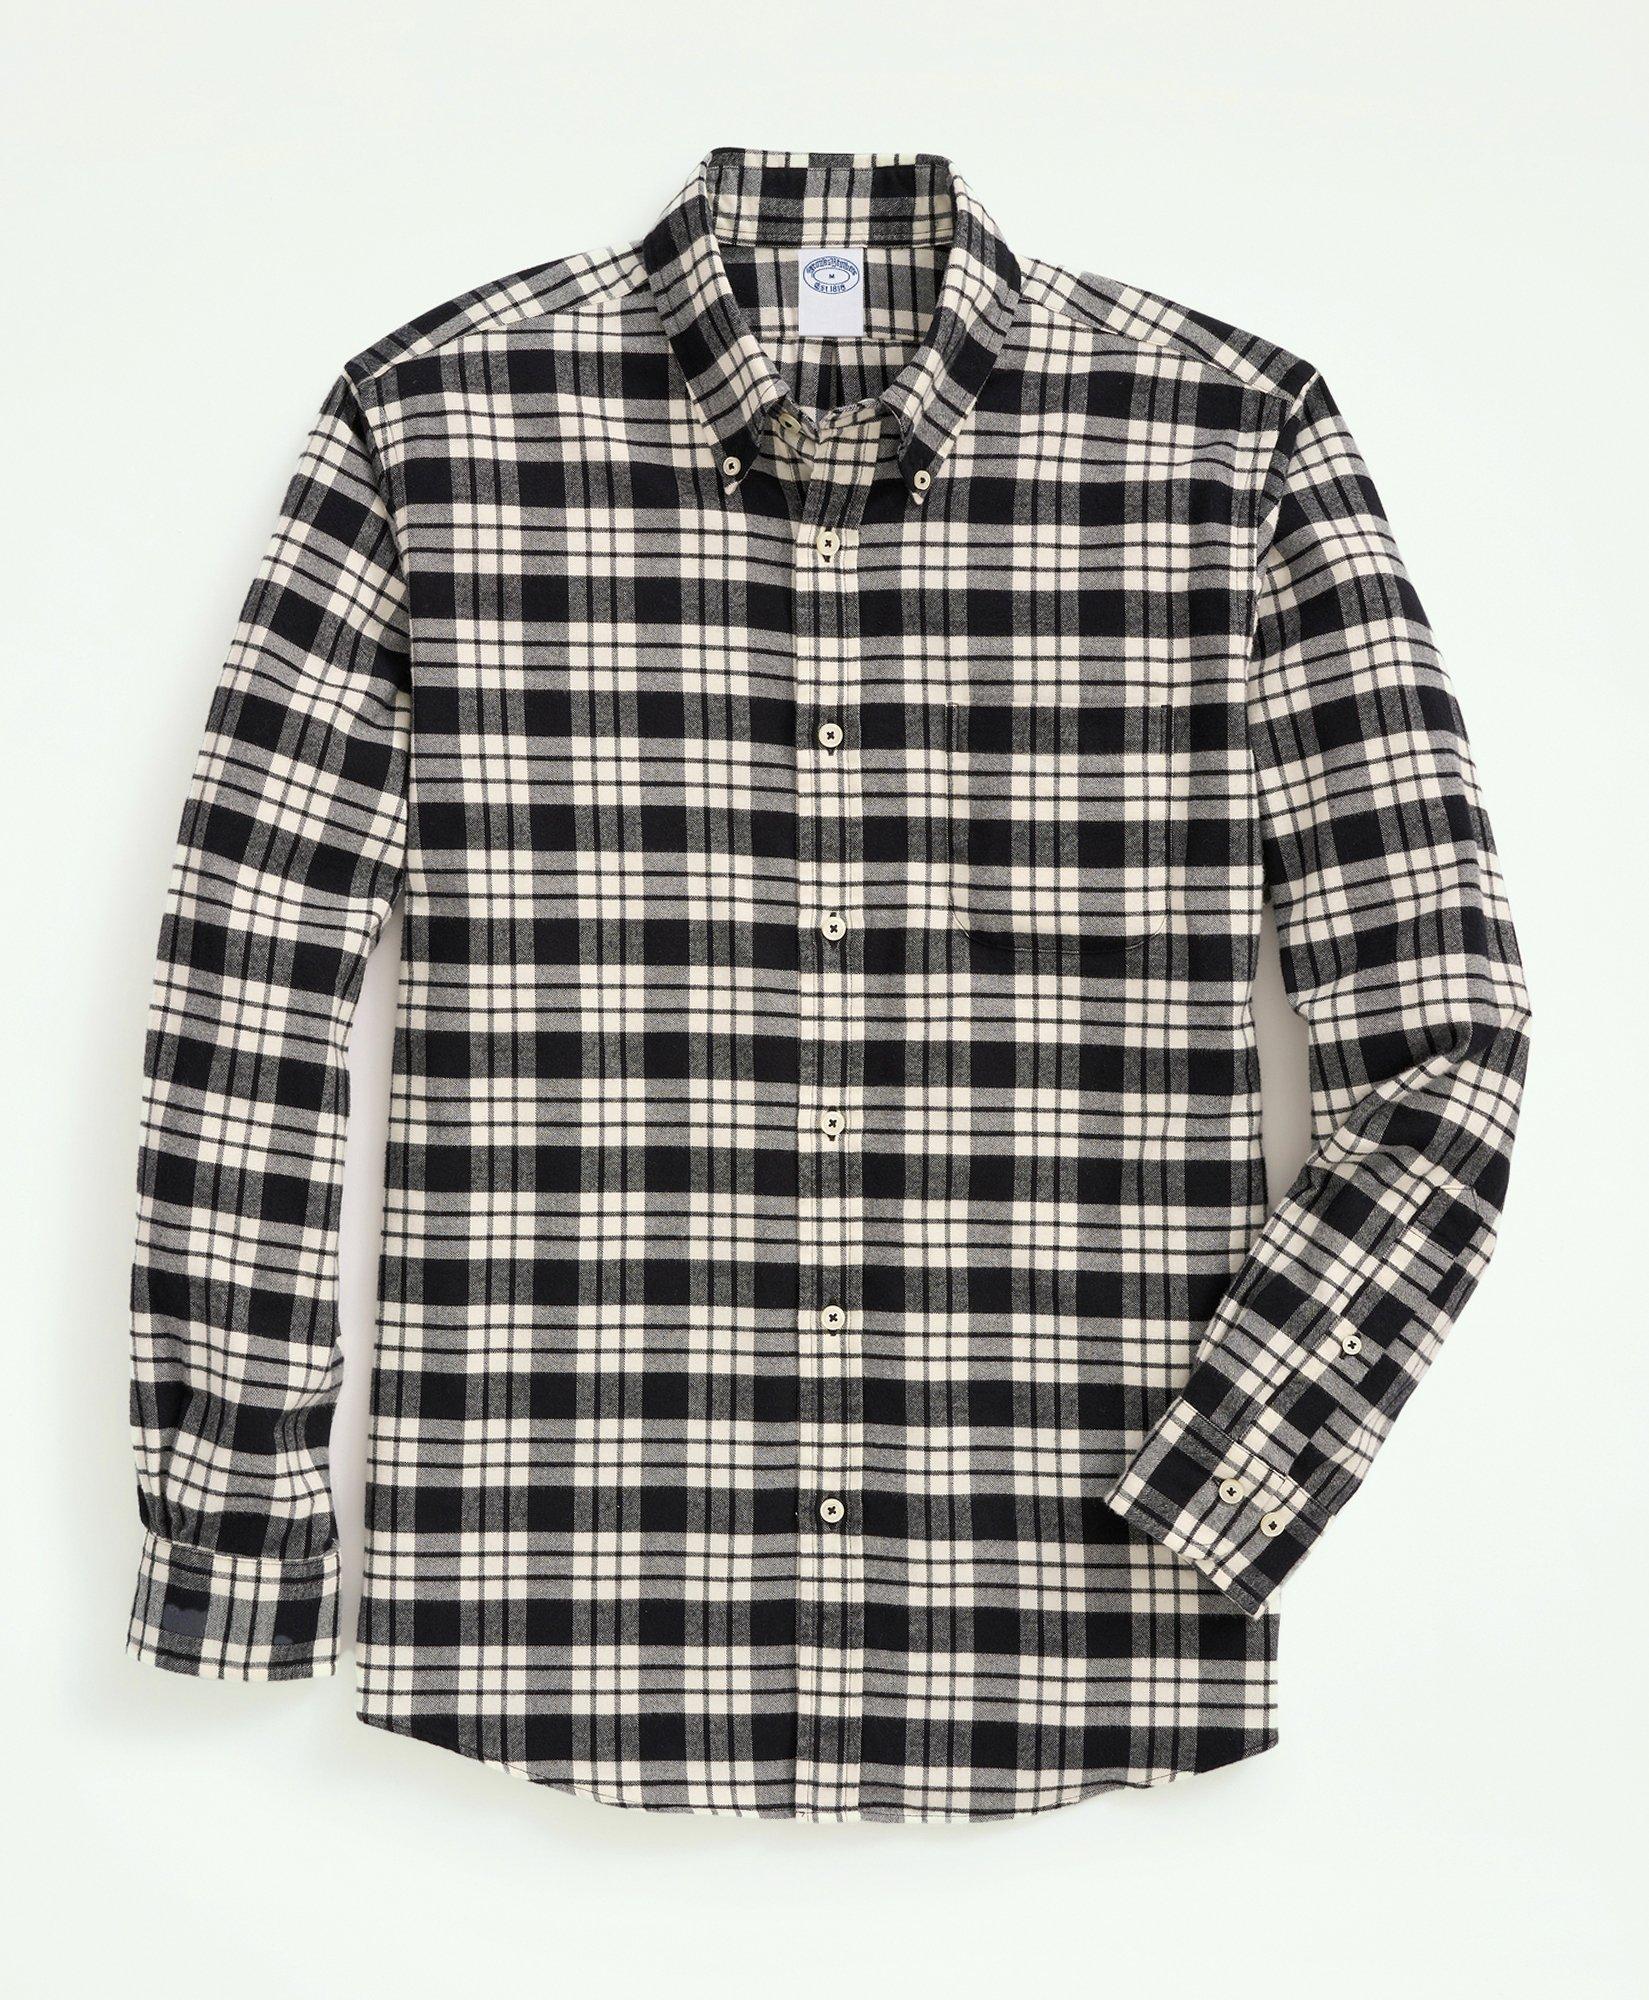 Shop Men's Sport Shirts, Oxfords, Flannel, & More